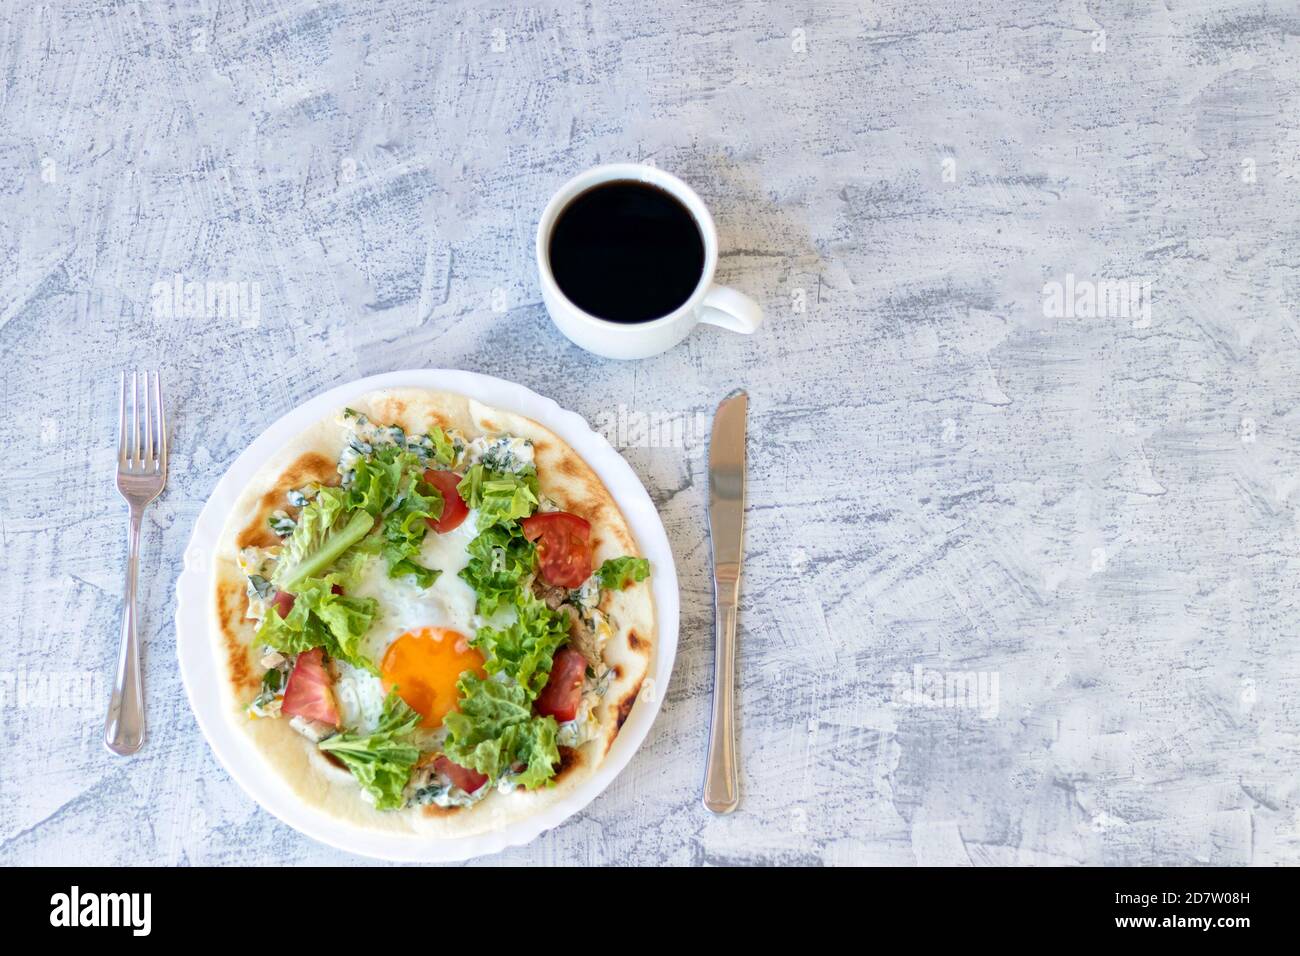 Petit-déjeuner italien avec café. Piadina avec œuf, tomates et salade. Délicieux petit déjeuner servi sur une table texturée. Vue de dessus. Mise au point douce Banque D'Images